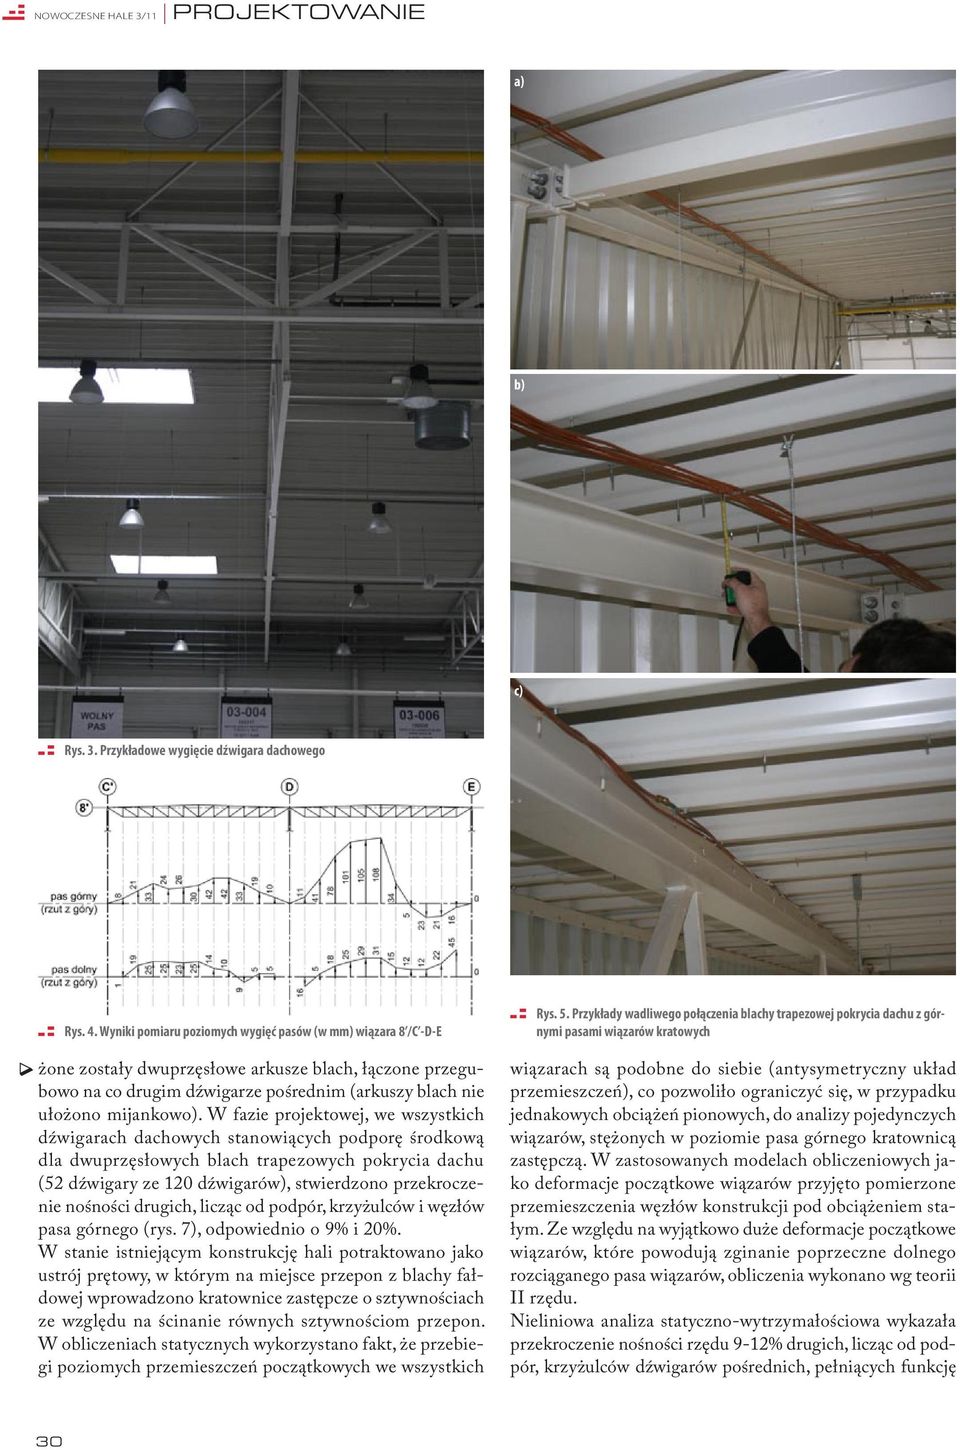 W fazie projektowej, we wszystkich dźwigarach dachowych stanowiących podporę środkową dla dwuprzęsłowych blach trapezowych pokrycia dachu (52 dźwigary ze 120 dźwigarów), stwierdzono przekroczenie